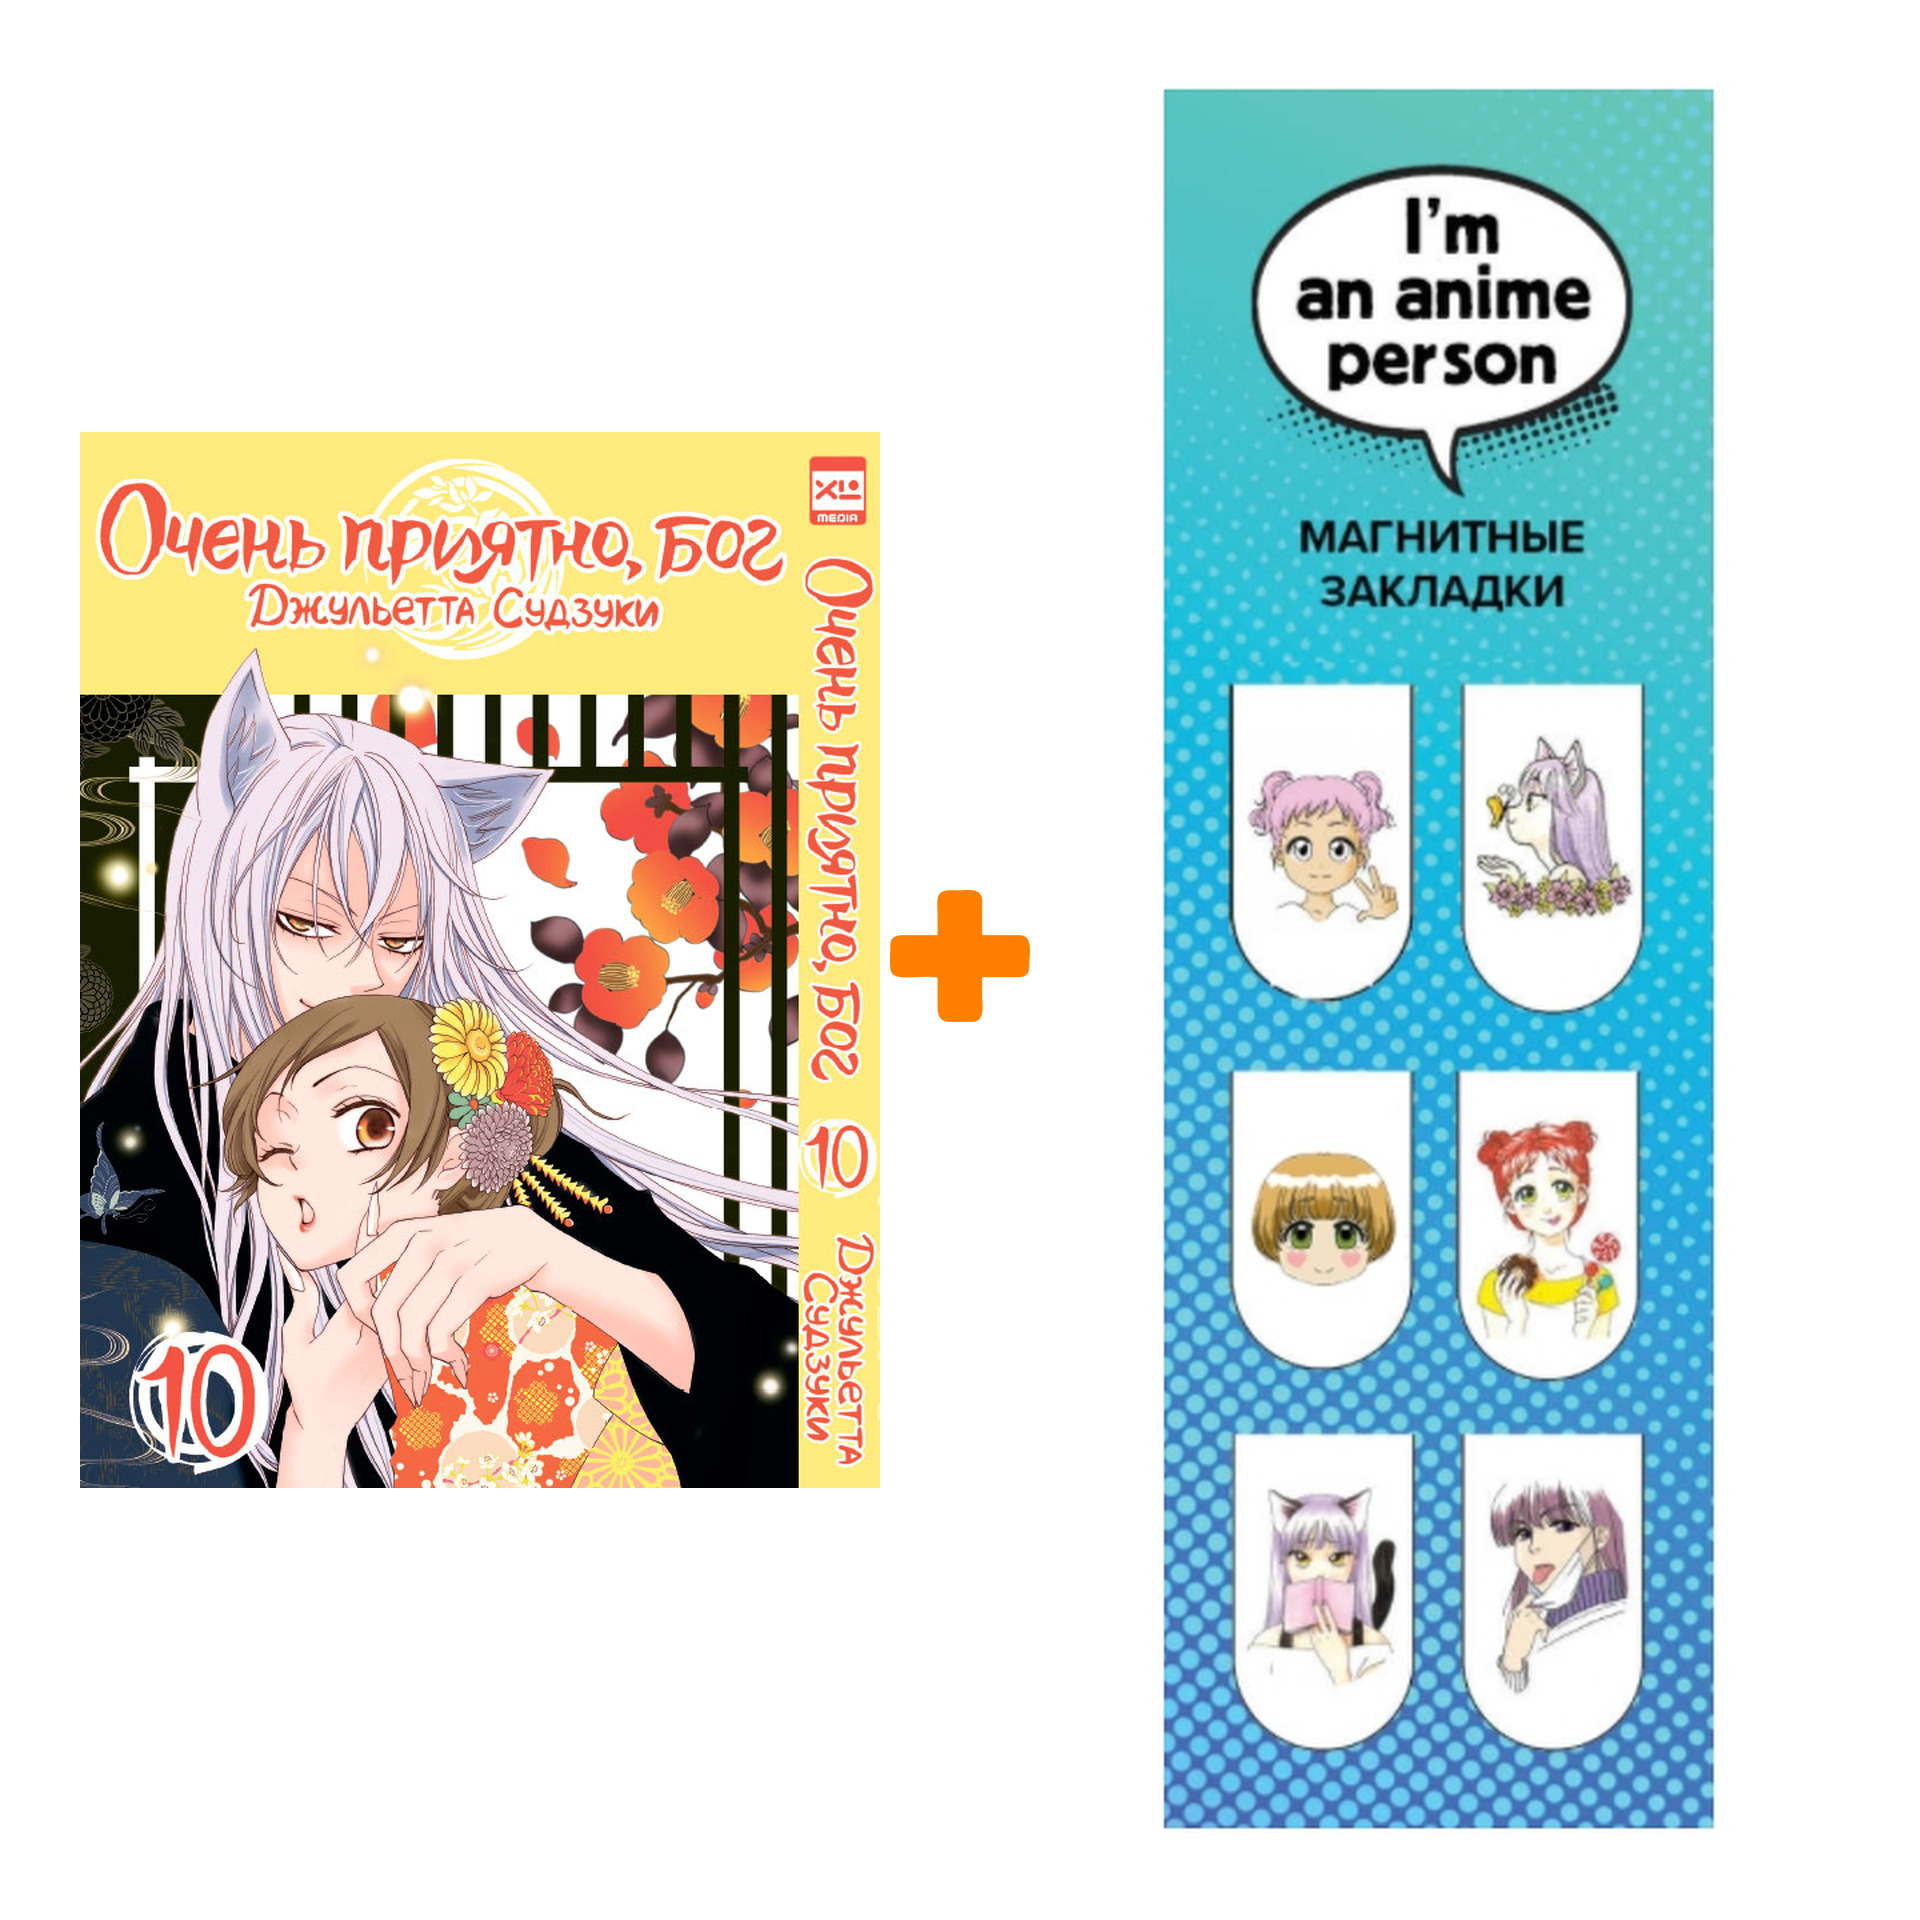 Набор Манга Очень приятно, бог Том 10 + Закладка I`m An Anime Person  магнитная 6-Pack - купить по цене 790 руб с доставкой в интернет-магазине  1С Интерес